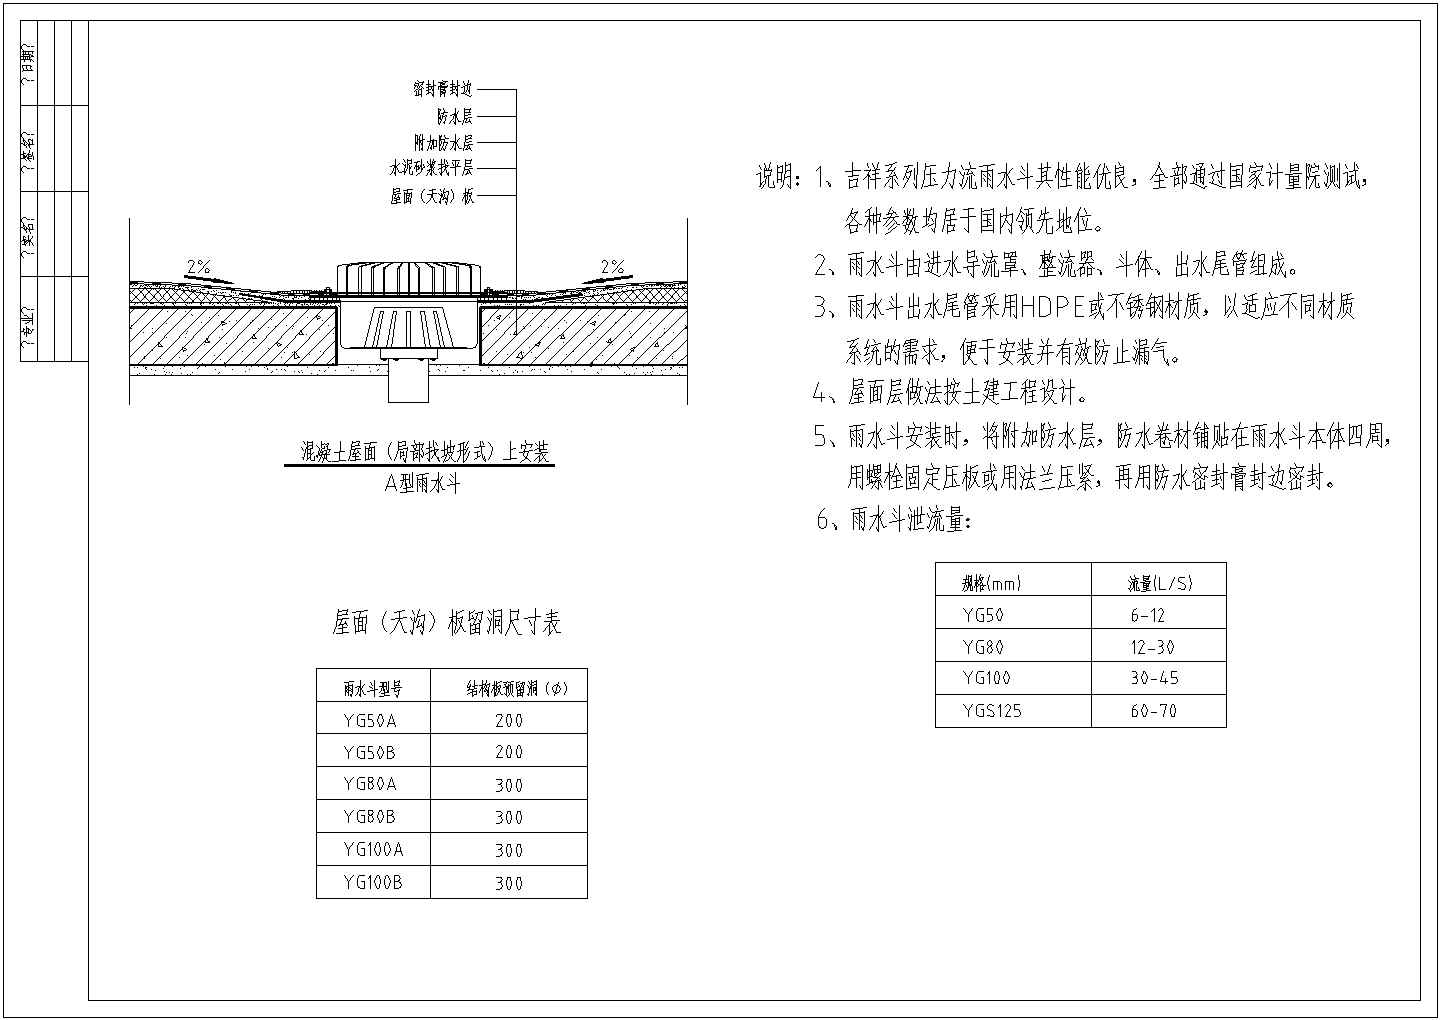 山西某热电厂虹吸式屋面雨水排水系统设计cad图(含管道固定系统正视图)